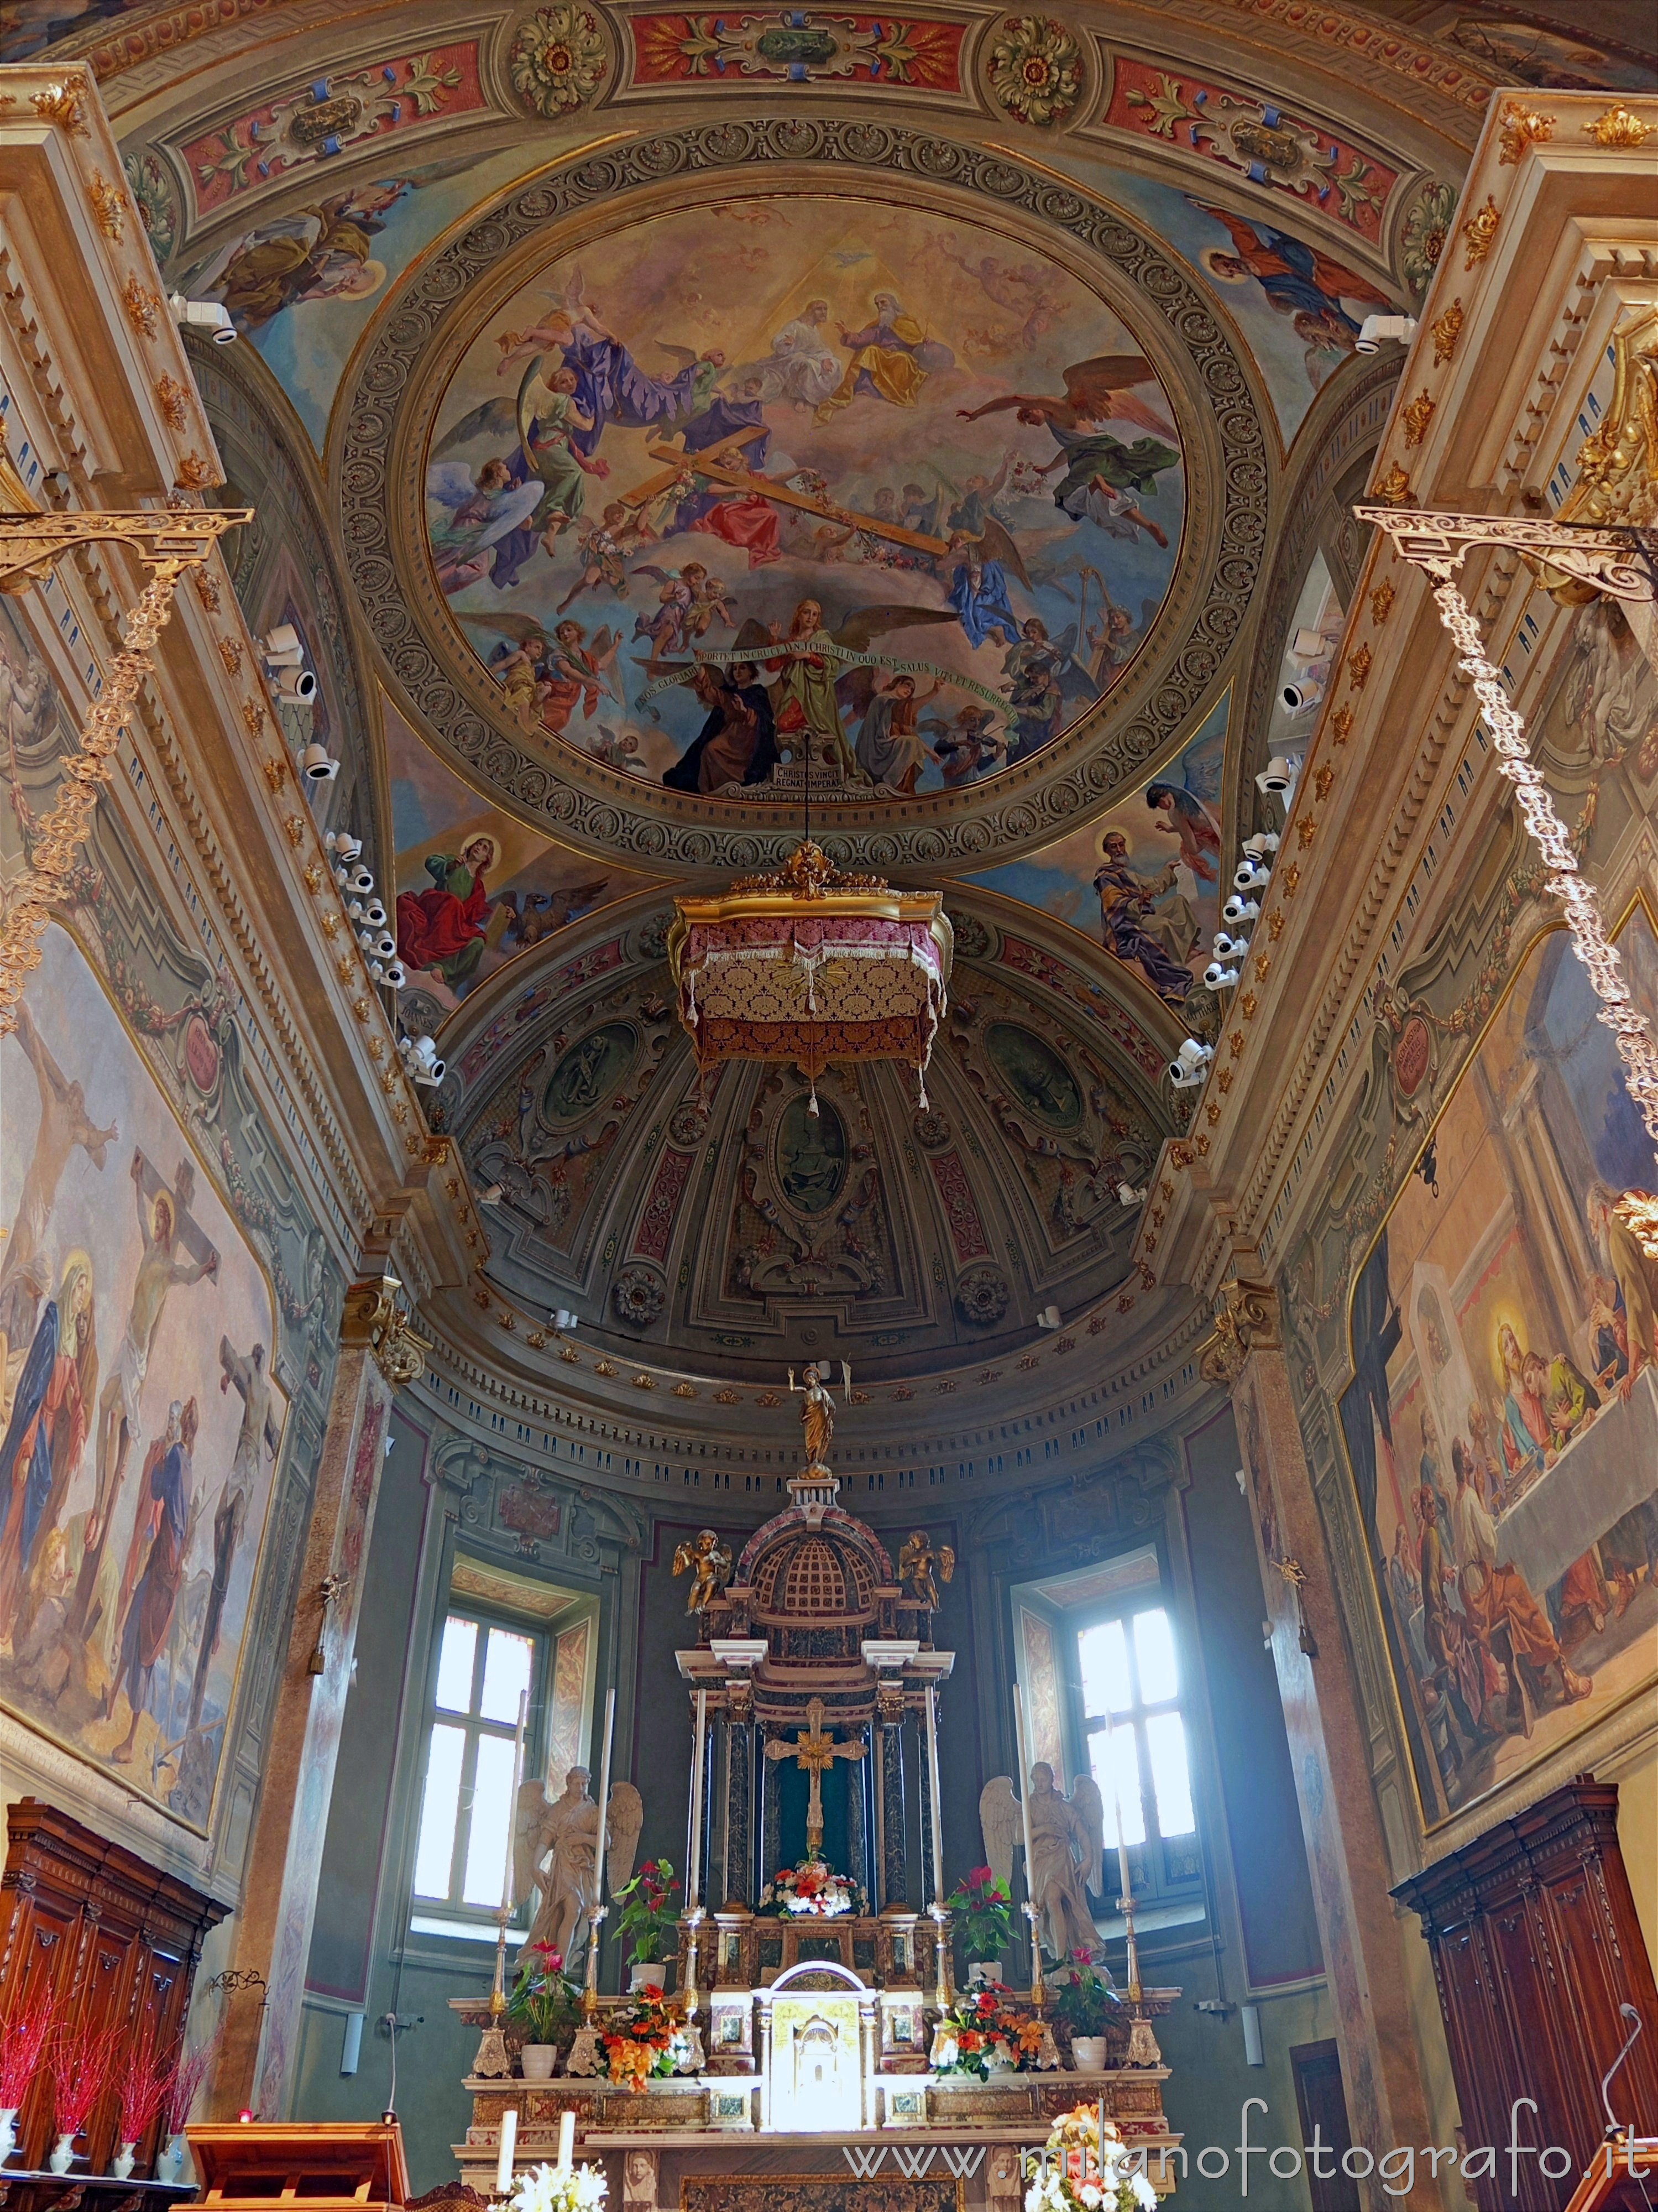 Meda (Monza e Brianza, Italy): Presbytery of the Sanctuary of the Holy Crucifix - Meda (Monza e Brianza, Italy)